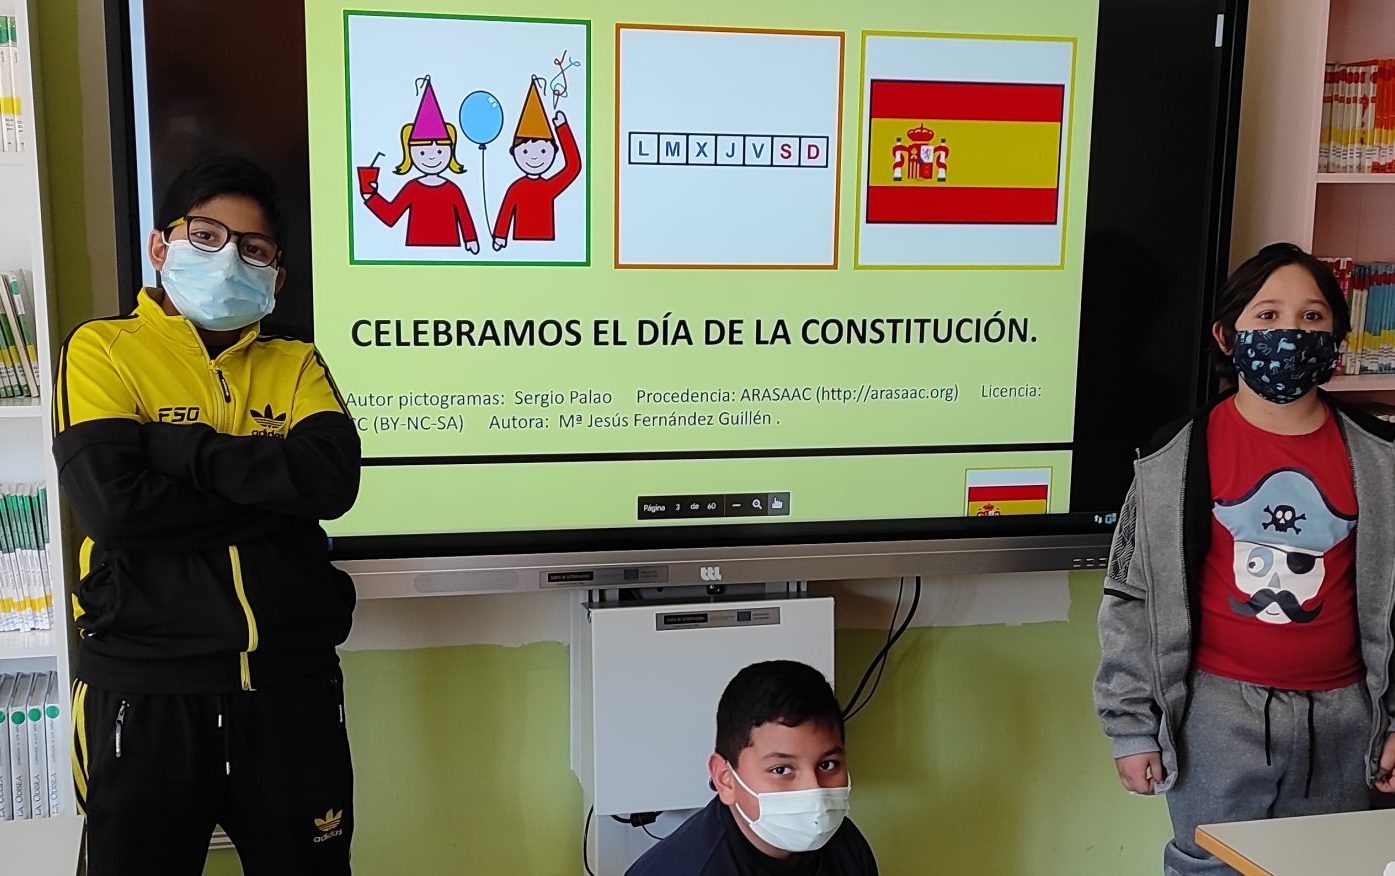 LO QUE HE APRENDIDO DE LA CONSTITUCIÓN ESPAÑOLA